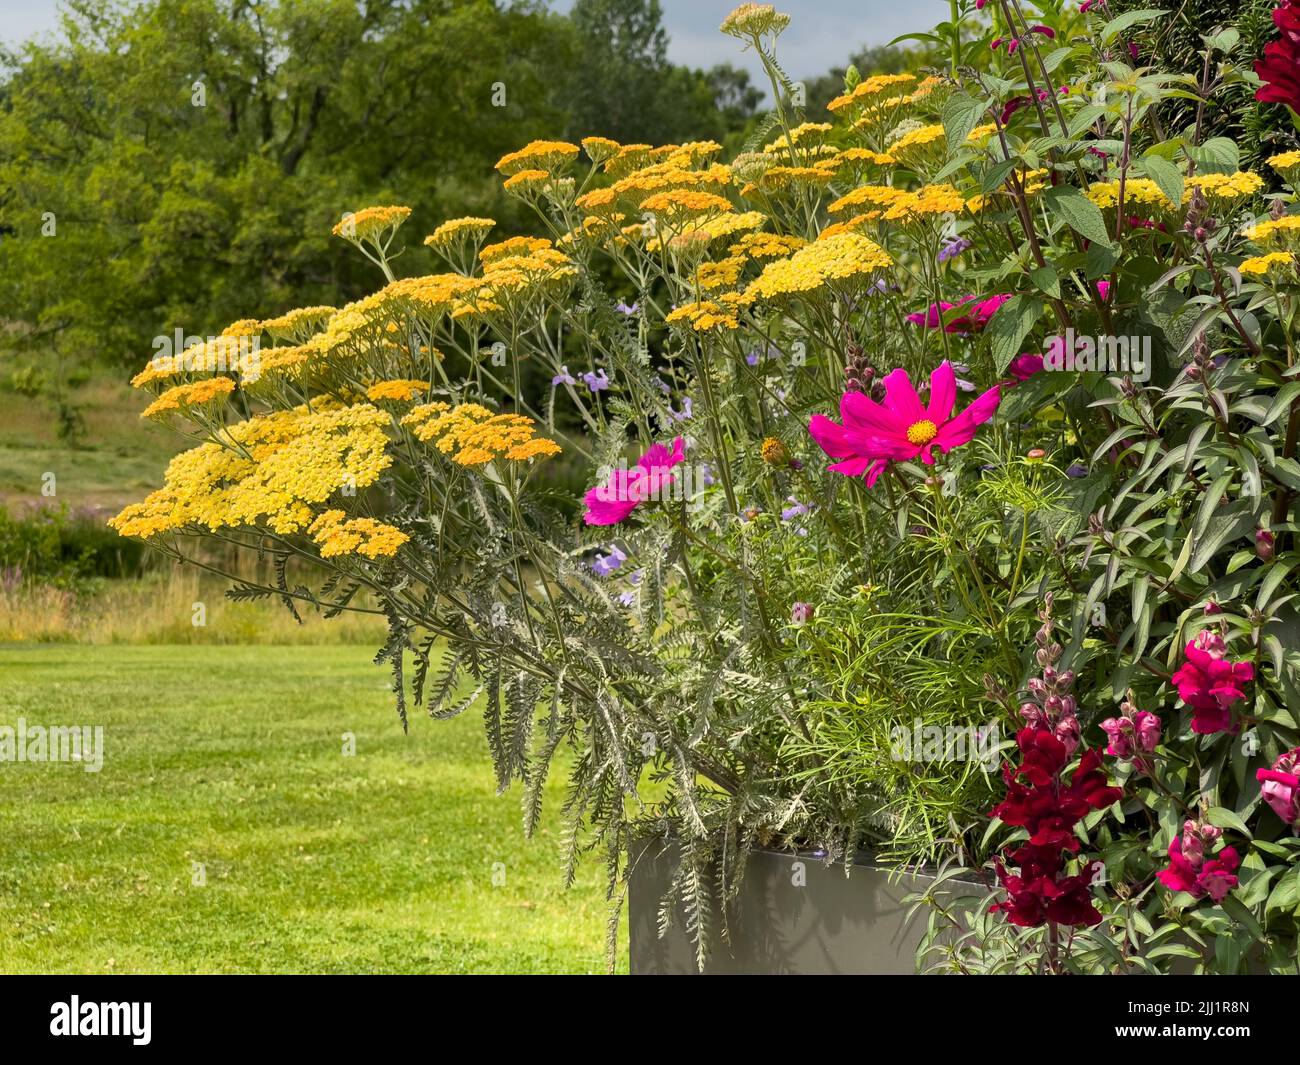 Contenedor metálico plantado con Achillea amarilla, Cosmos rosa brillante y Snapdragones rojo oscuro con césped y árboles detrás. Foto de stock